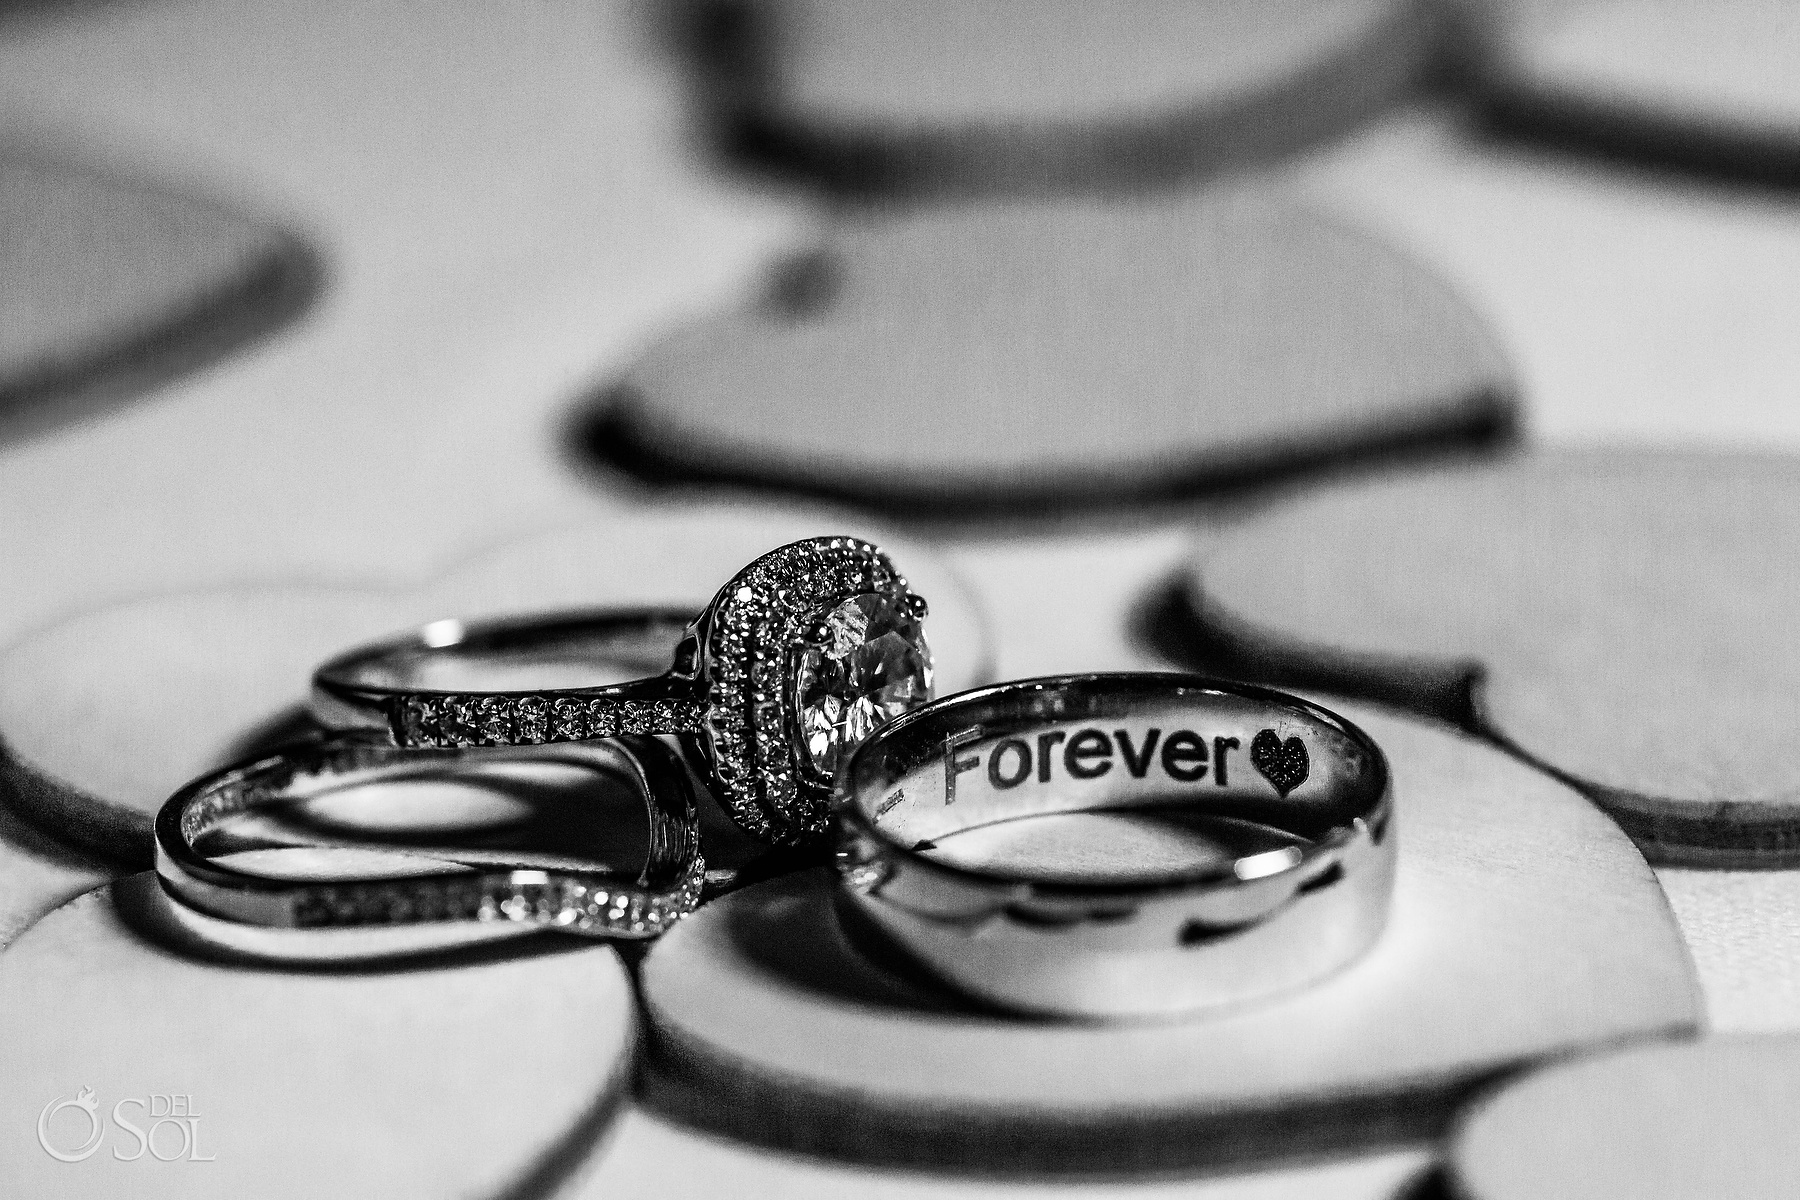 Forever wedding rings